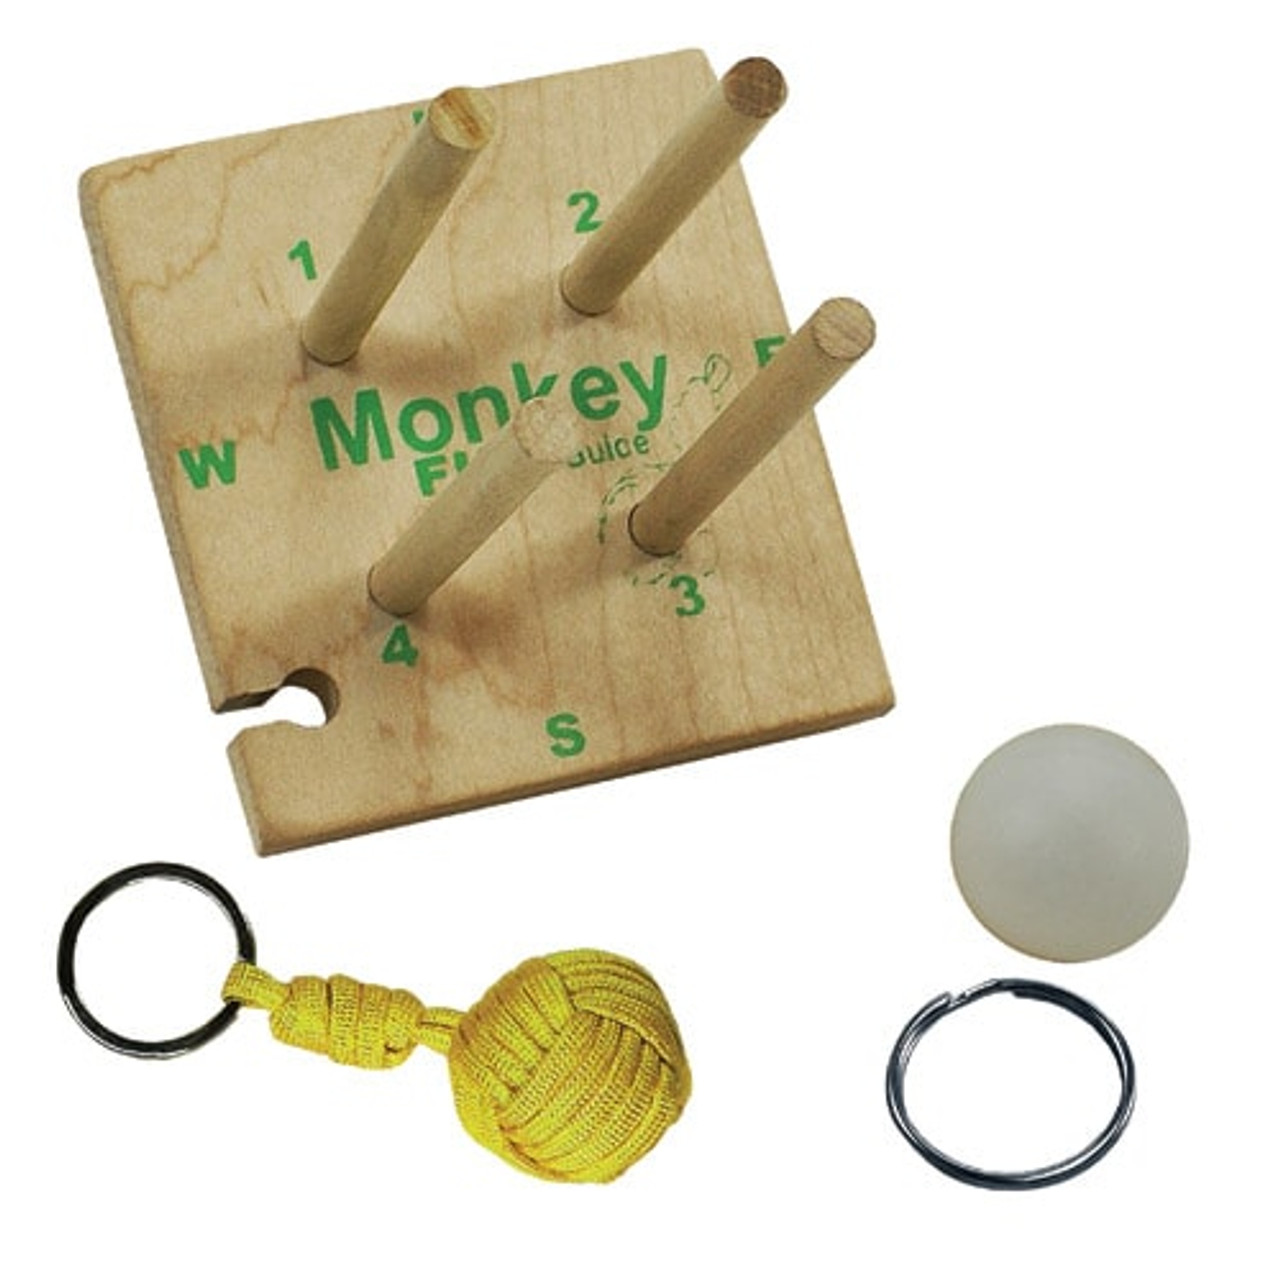 Pepperell Wooden Monkey Maker Kit